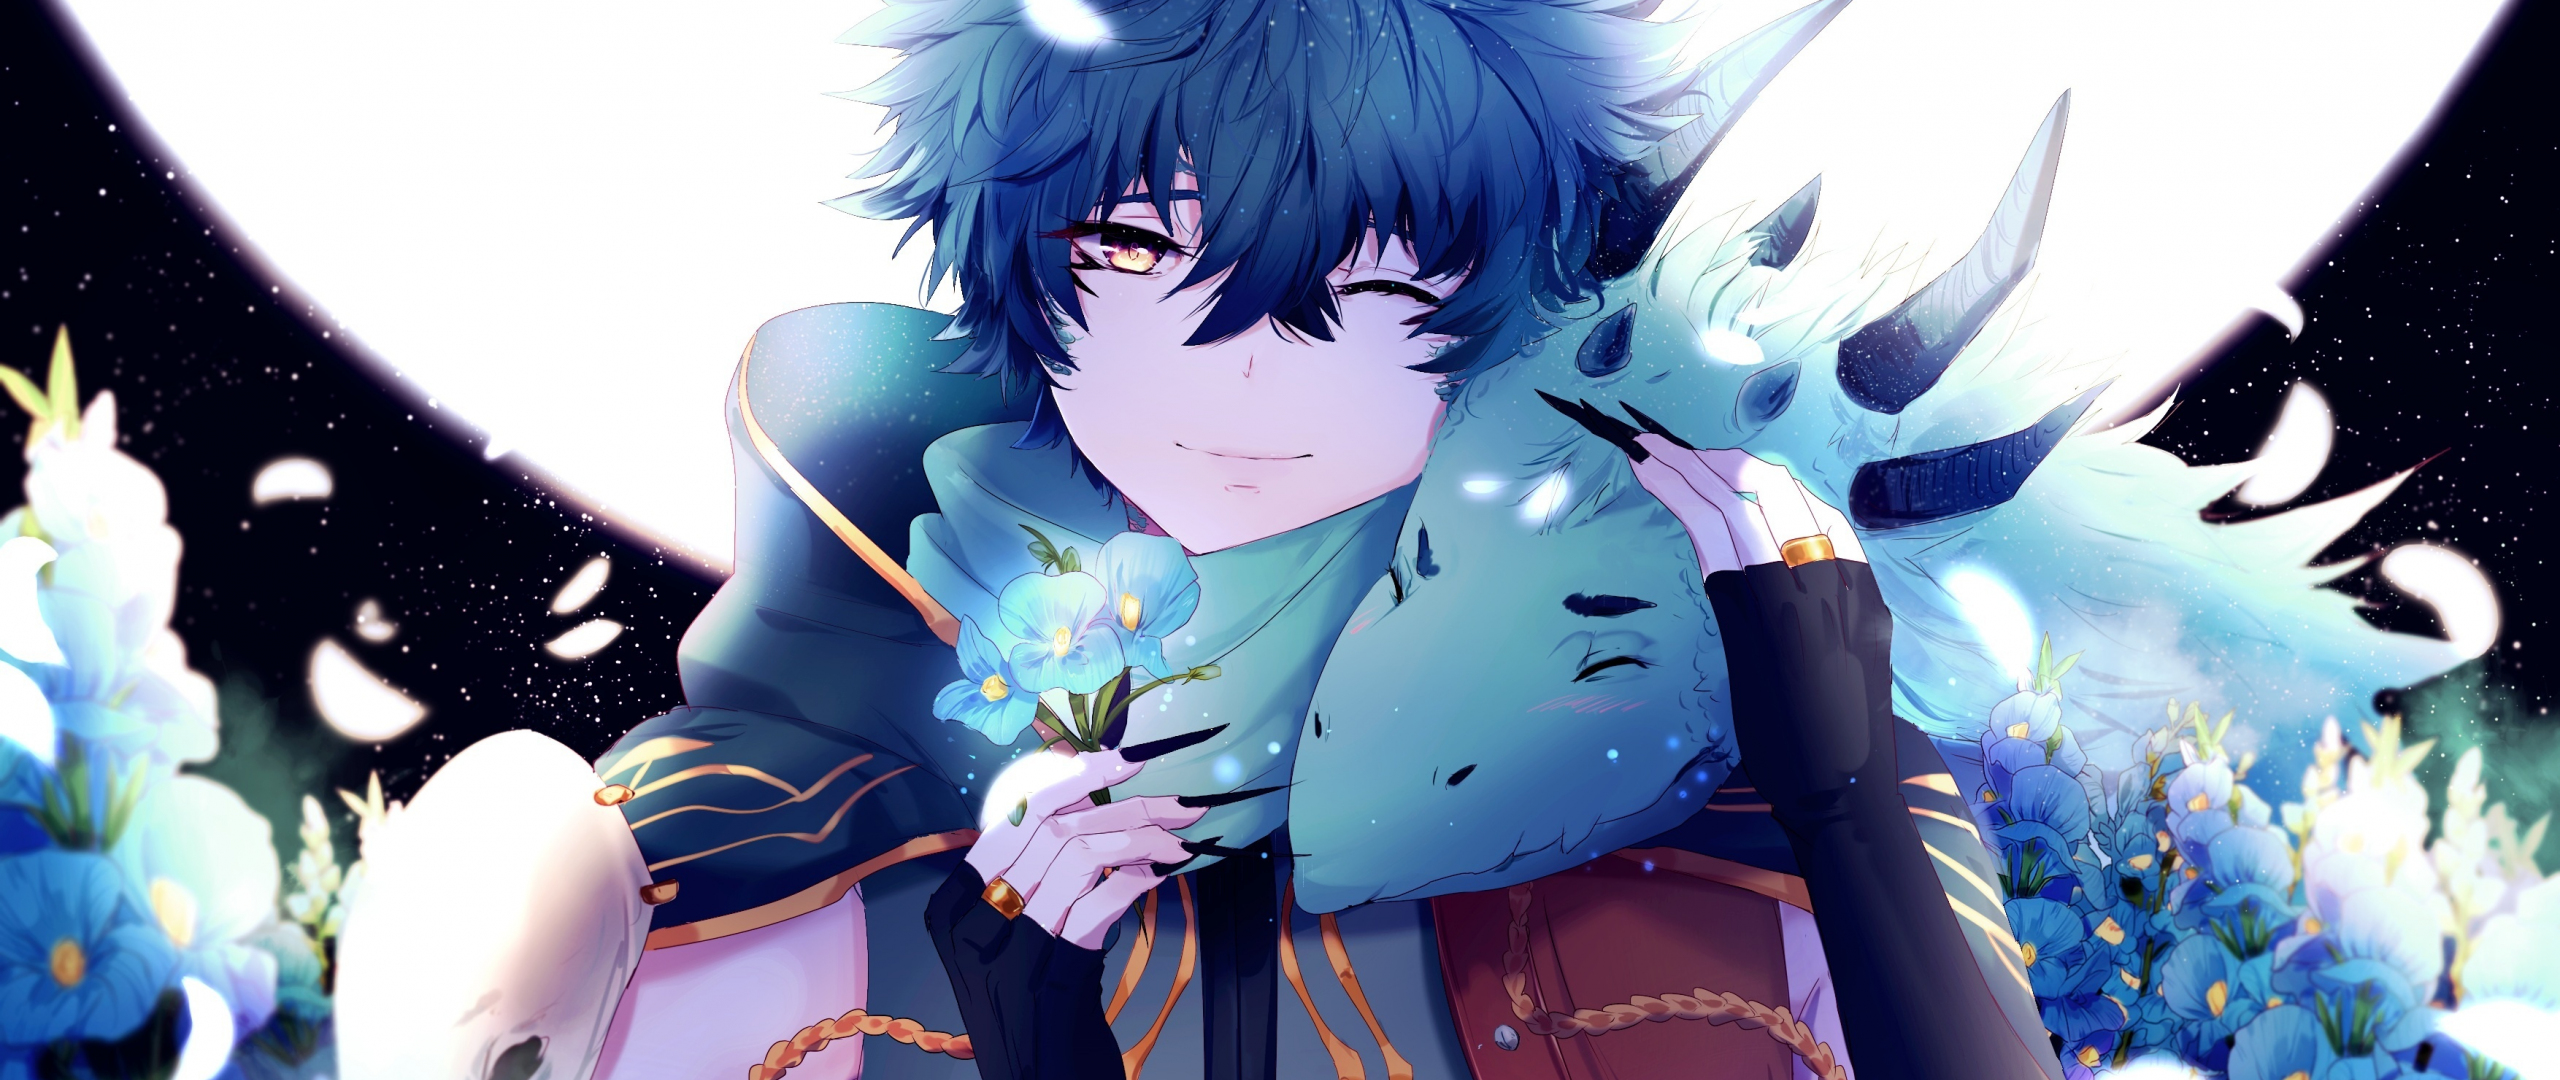 Download 2560x1080 Wallpaper Anime Boy Dragon Blue Flowers